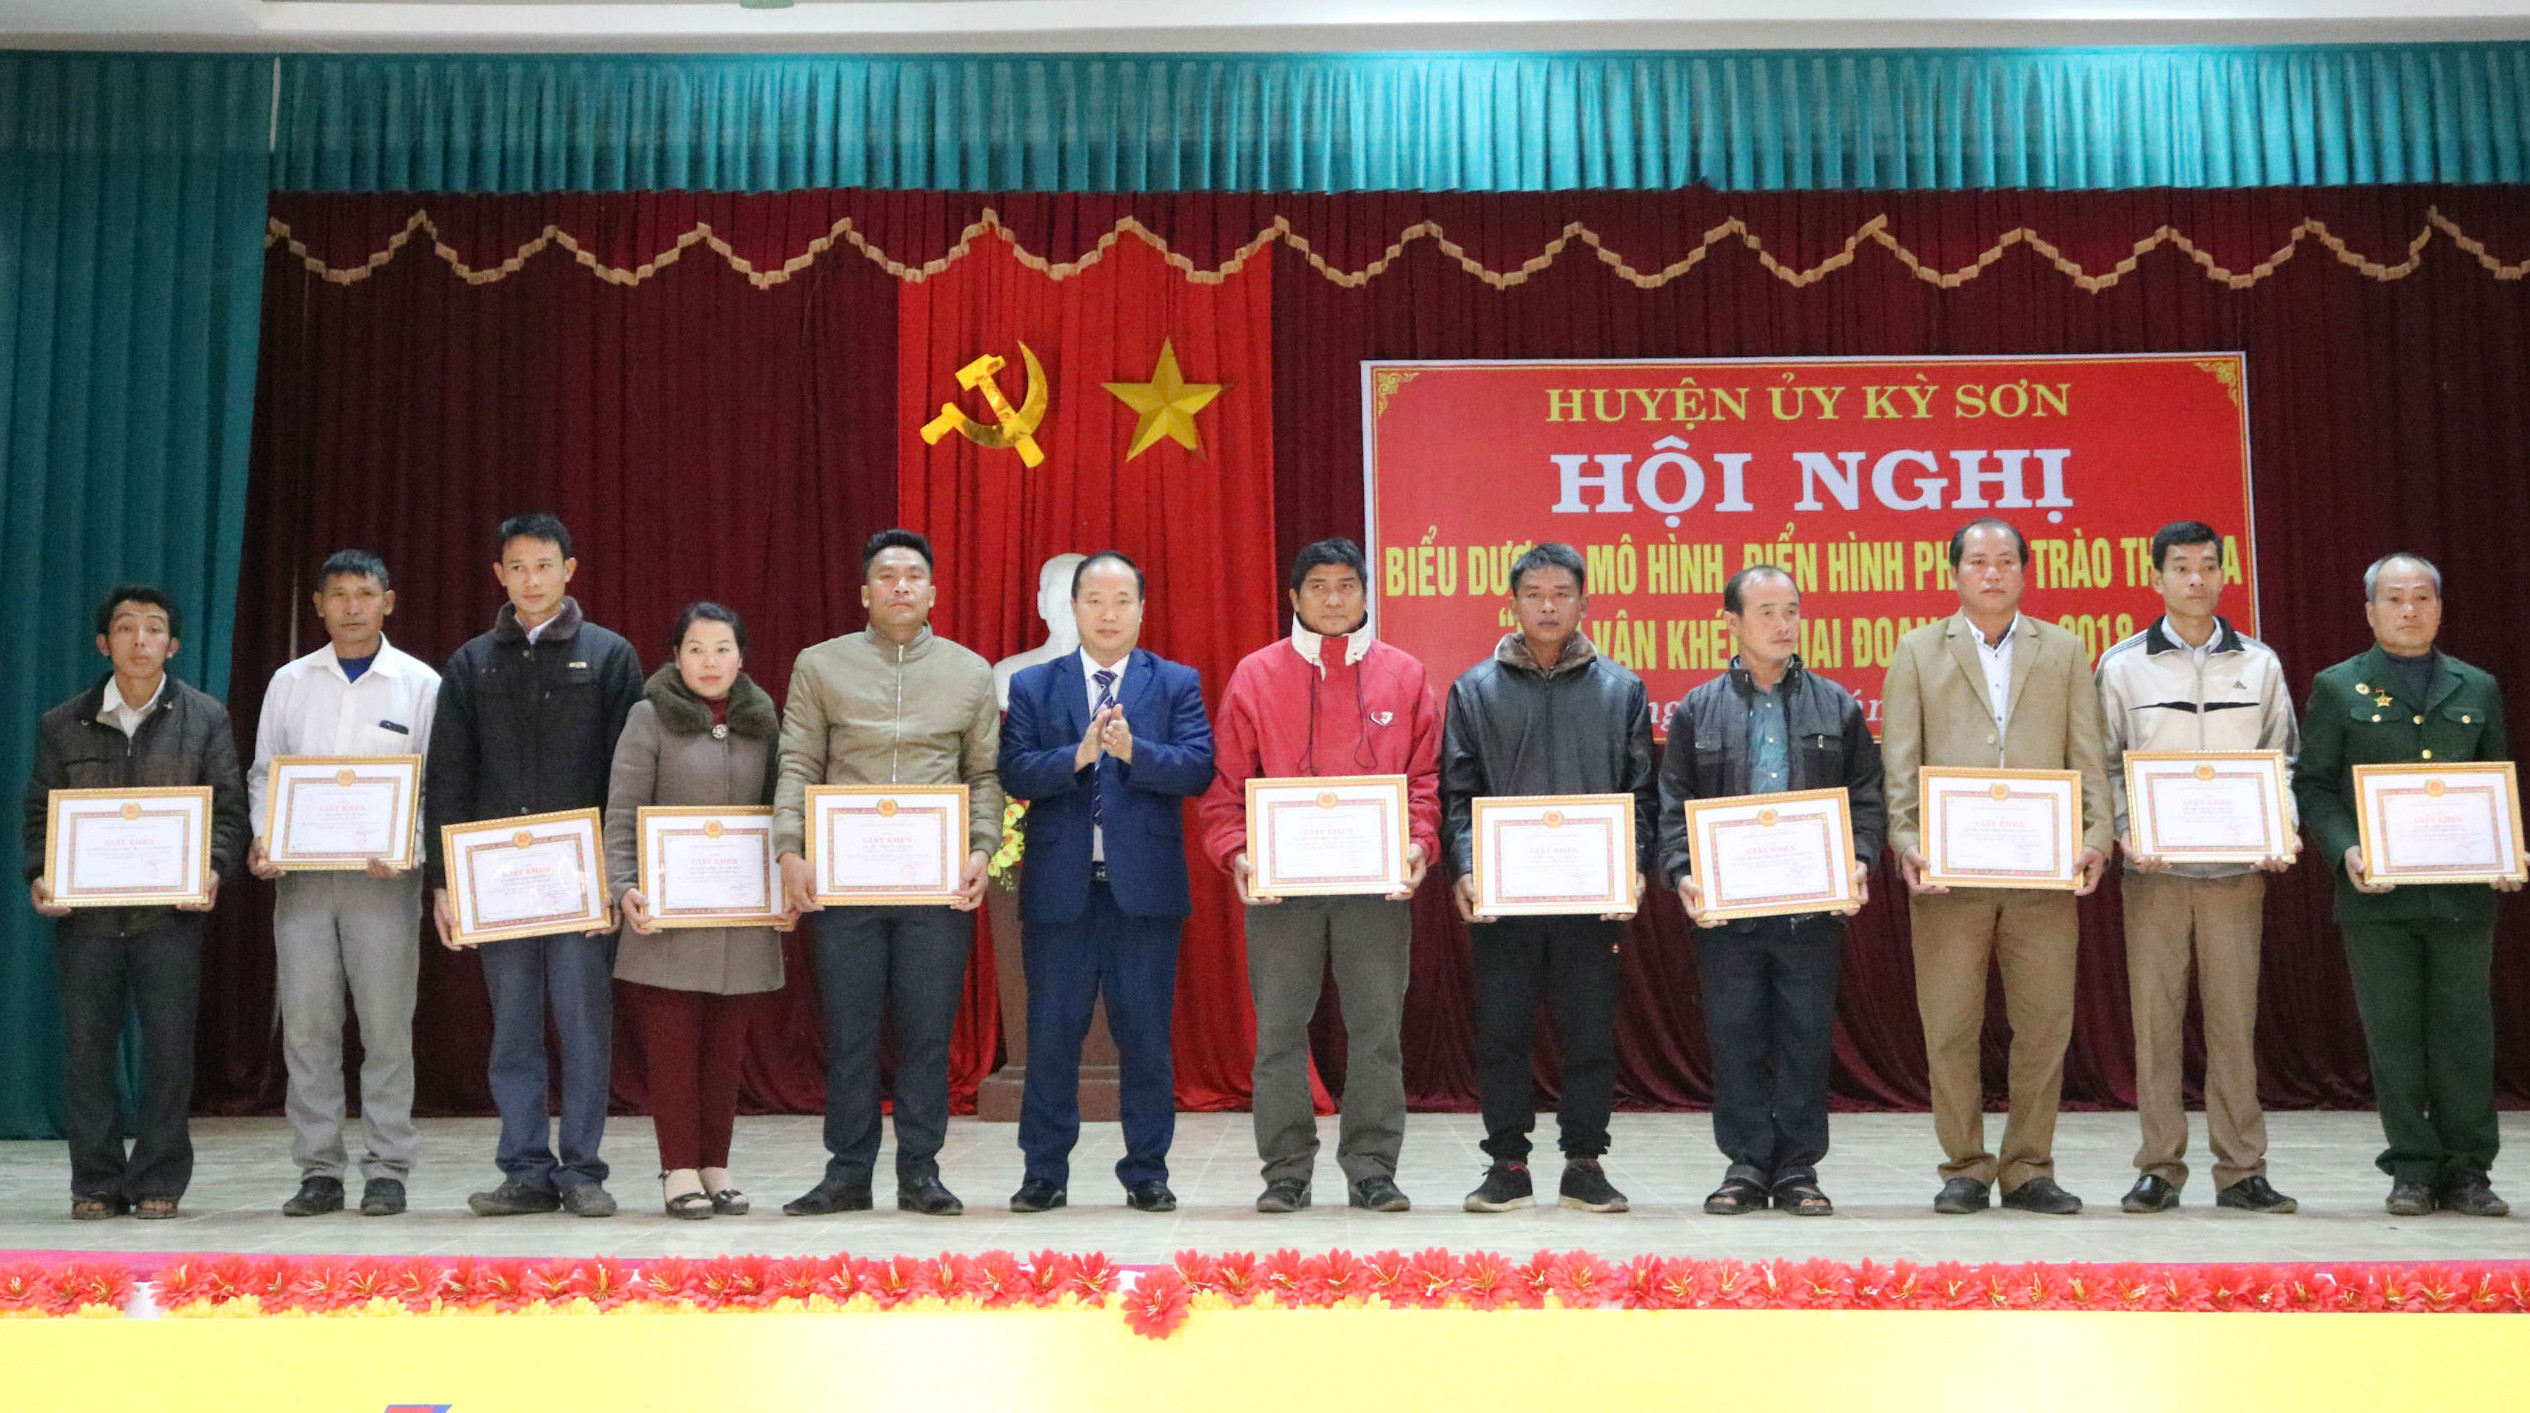  Trao giấy khen cho 24 tập thể tiên tiến trong phong trào dân vận khéo ở Kỳ Sơn